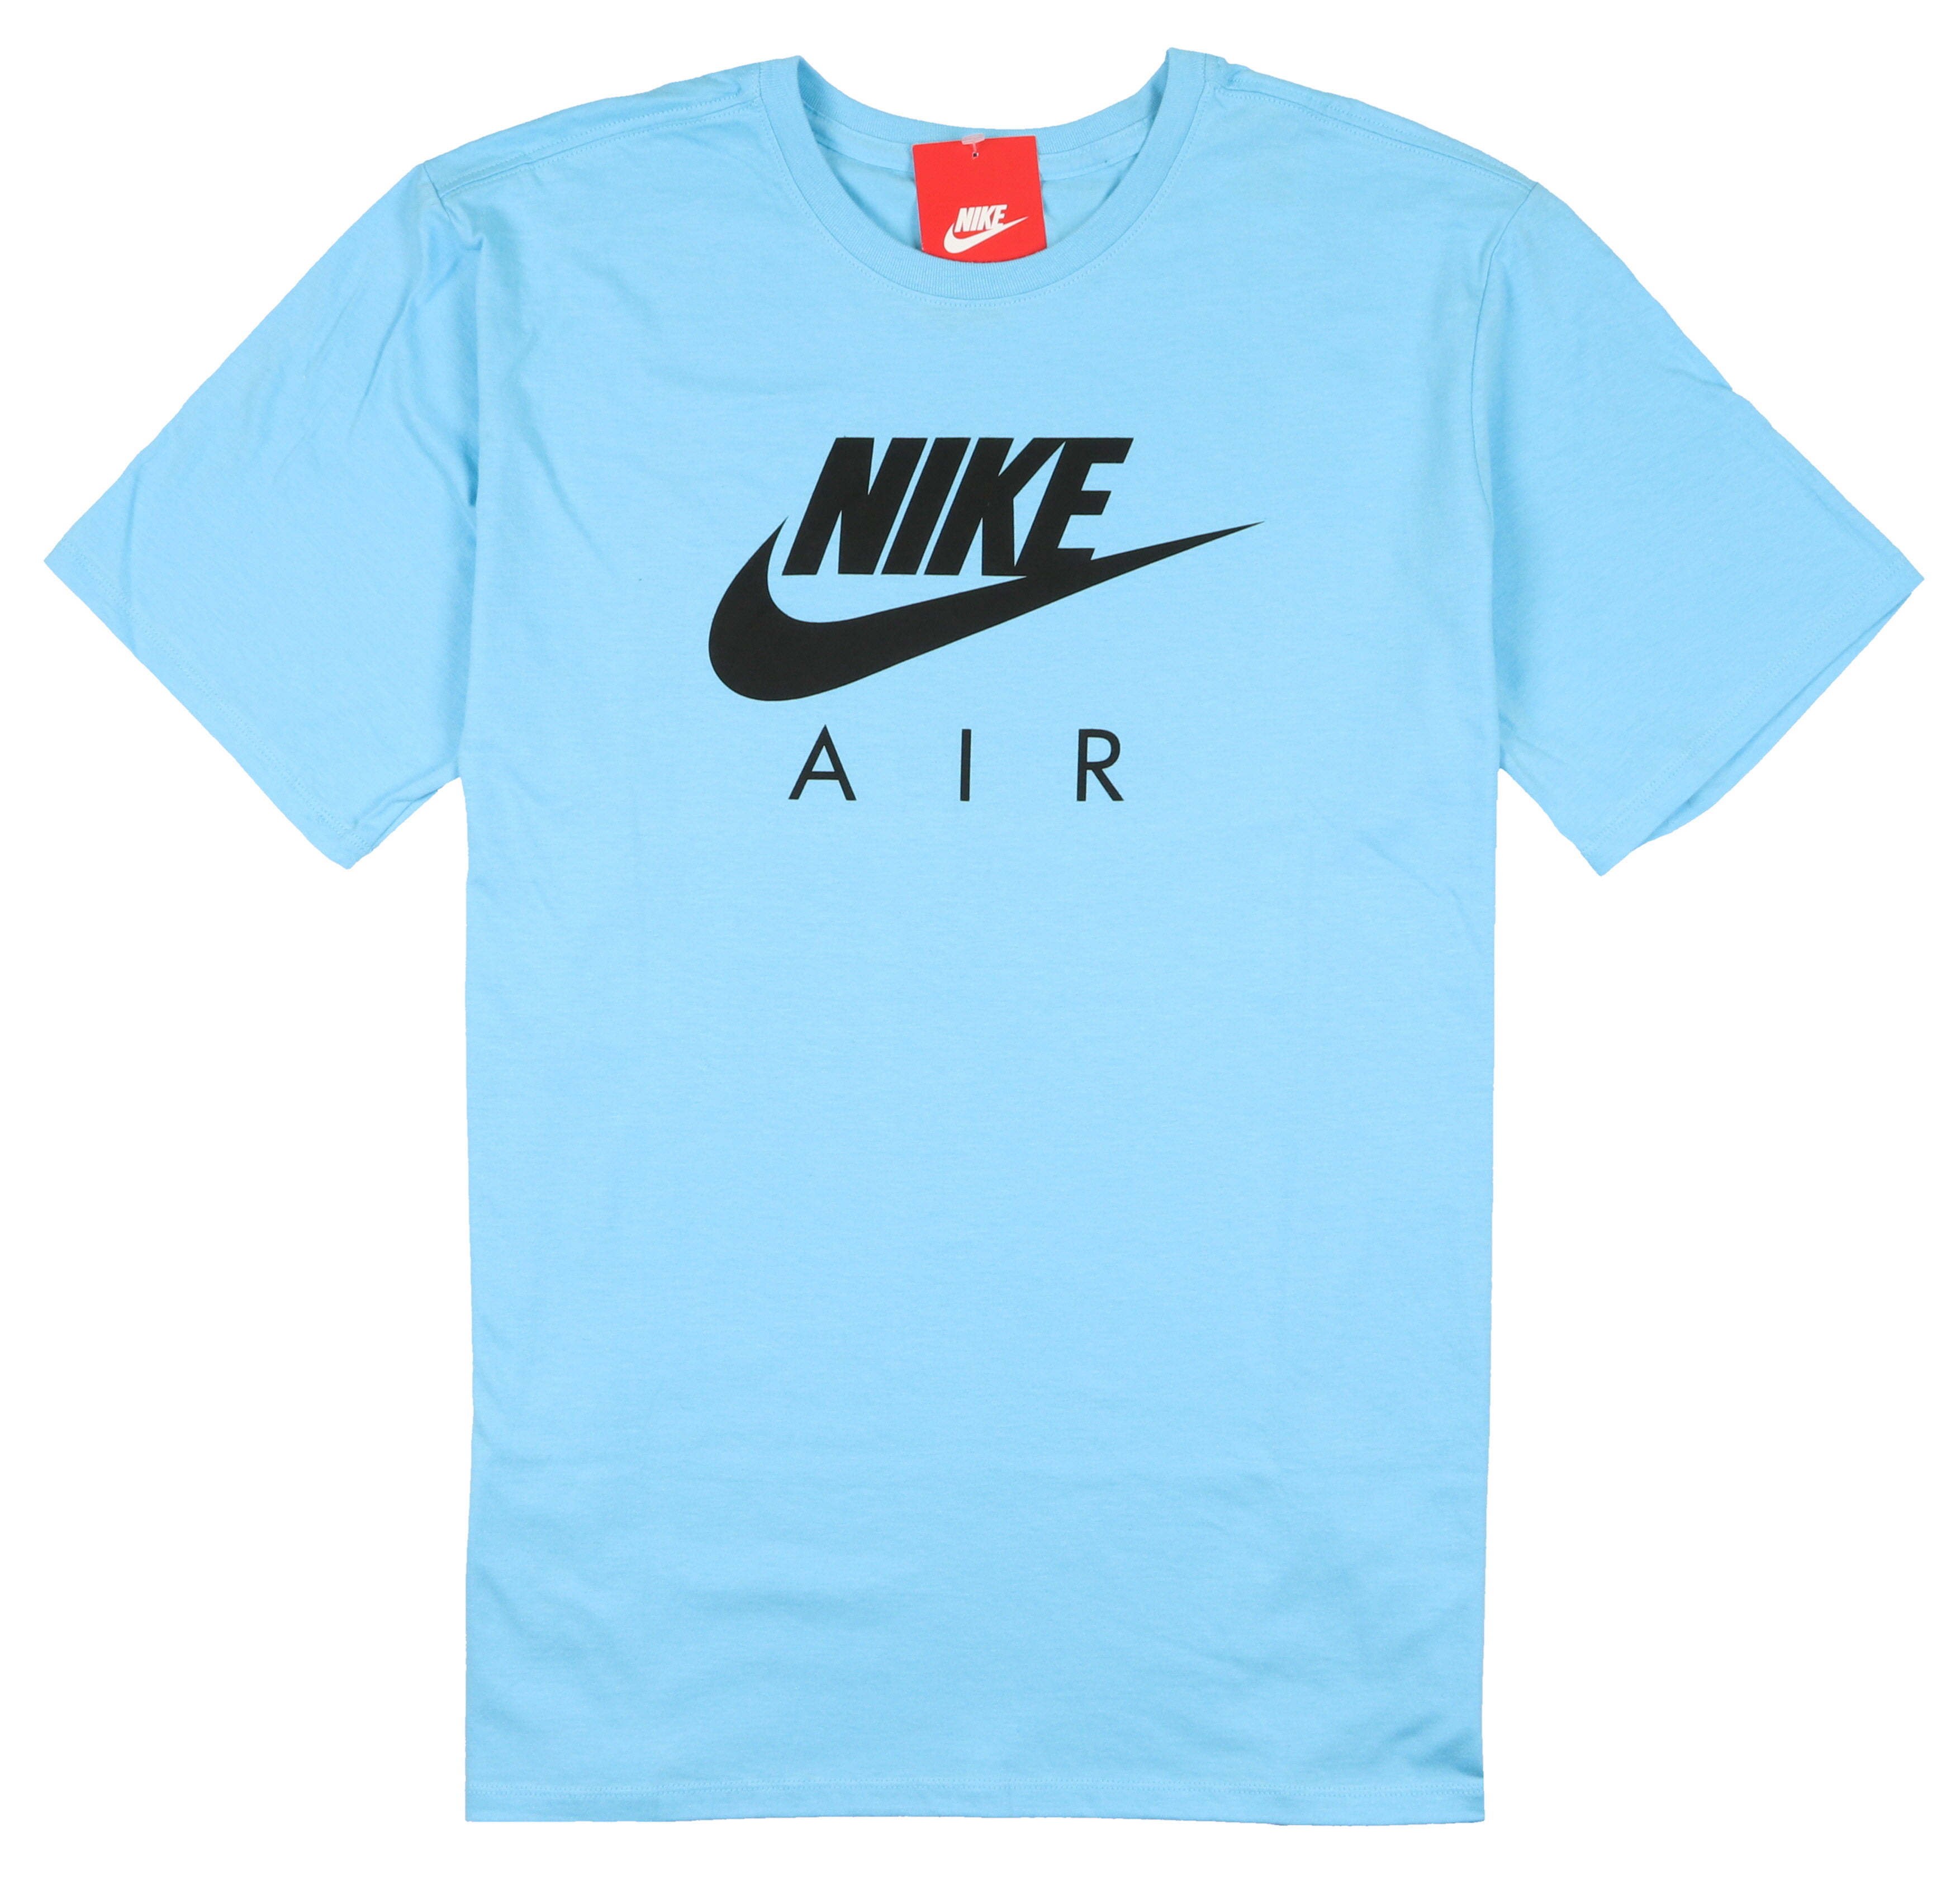 nike air t shirt blue